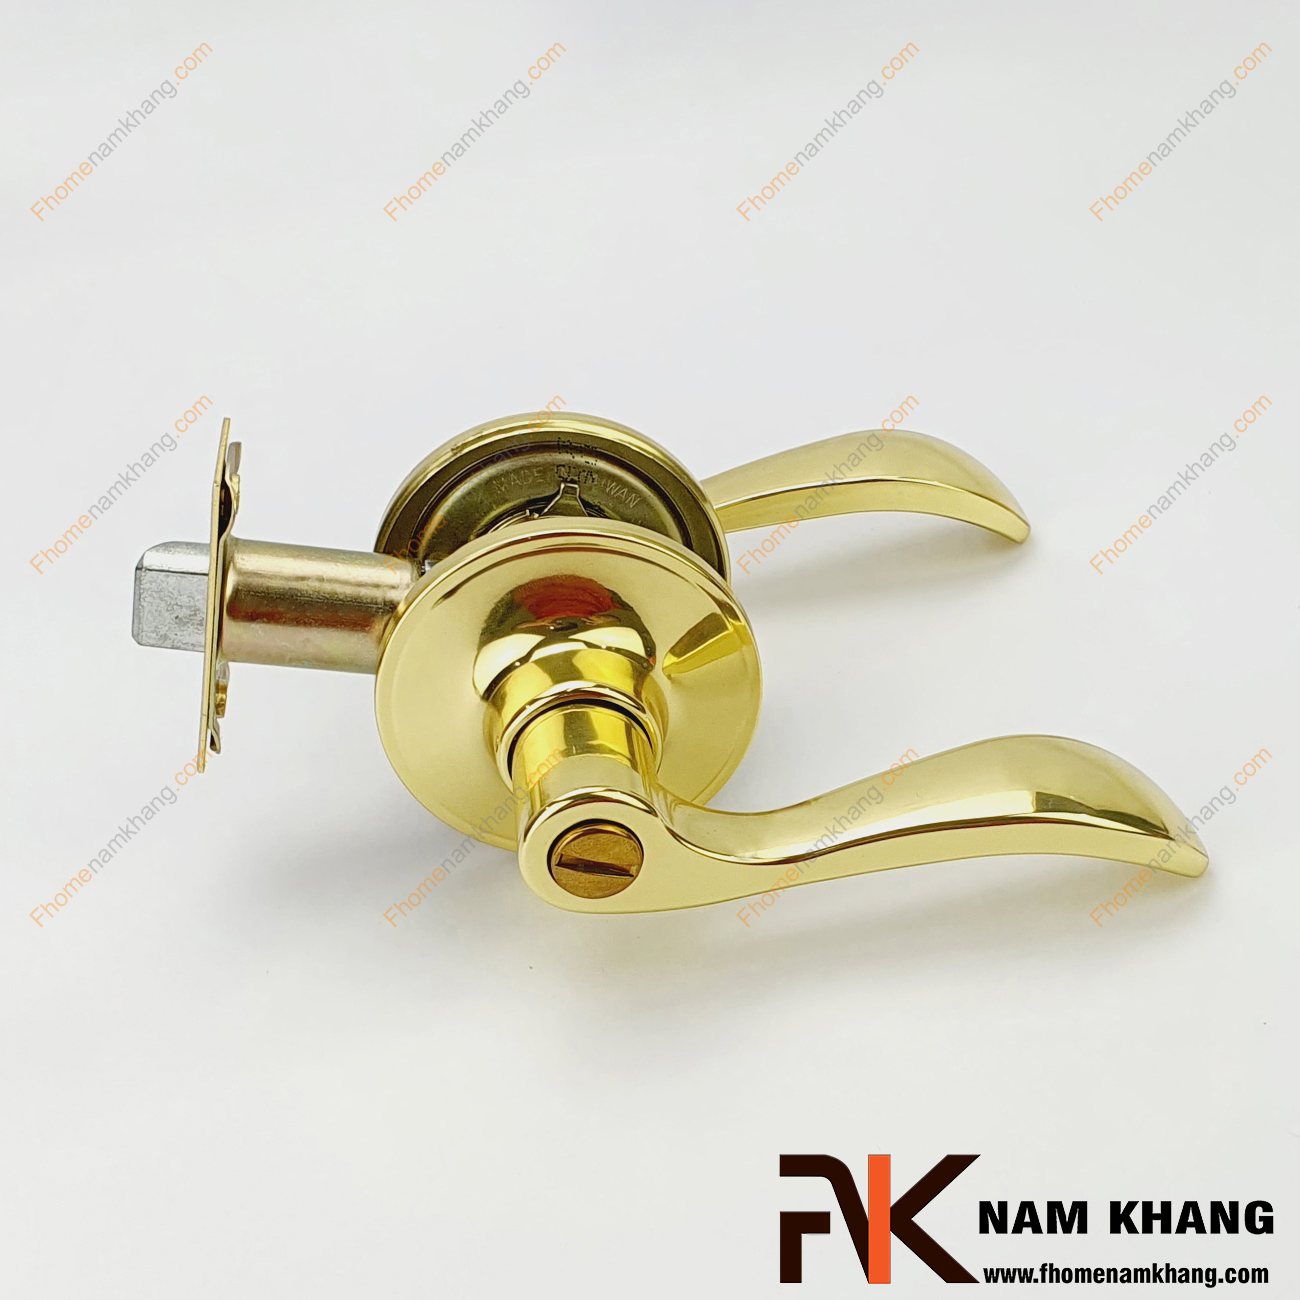 Khóa cửa tay gạt cao cấp màu vàng bóng NK500-VVS là sản phẩm khóa cửa đơn giản, tiện lợi và đa dạng các khuôn dạng đáp ứng nhu cầu của người sử dụng.